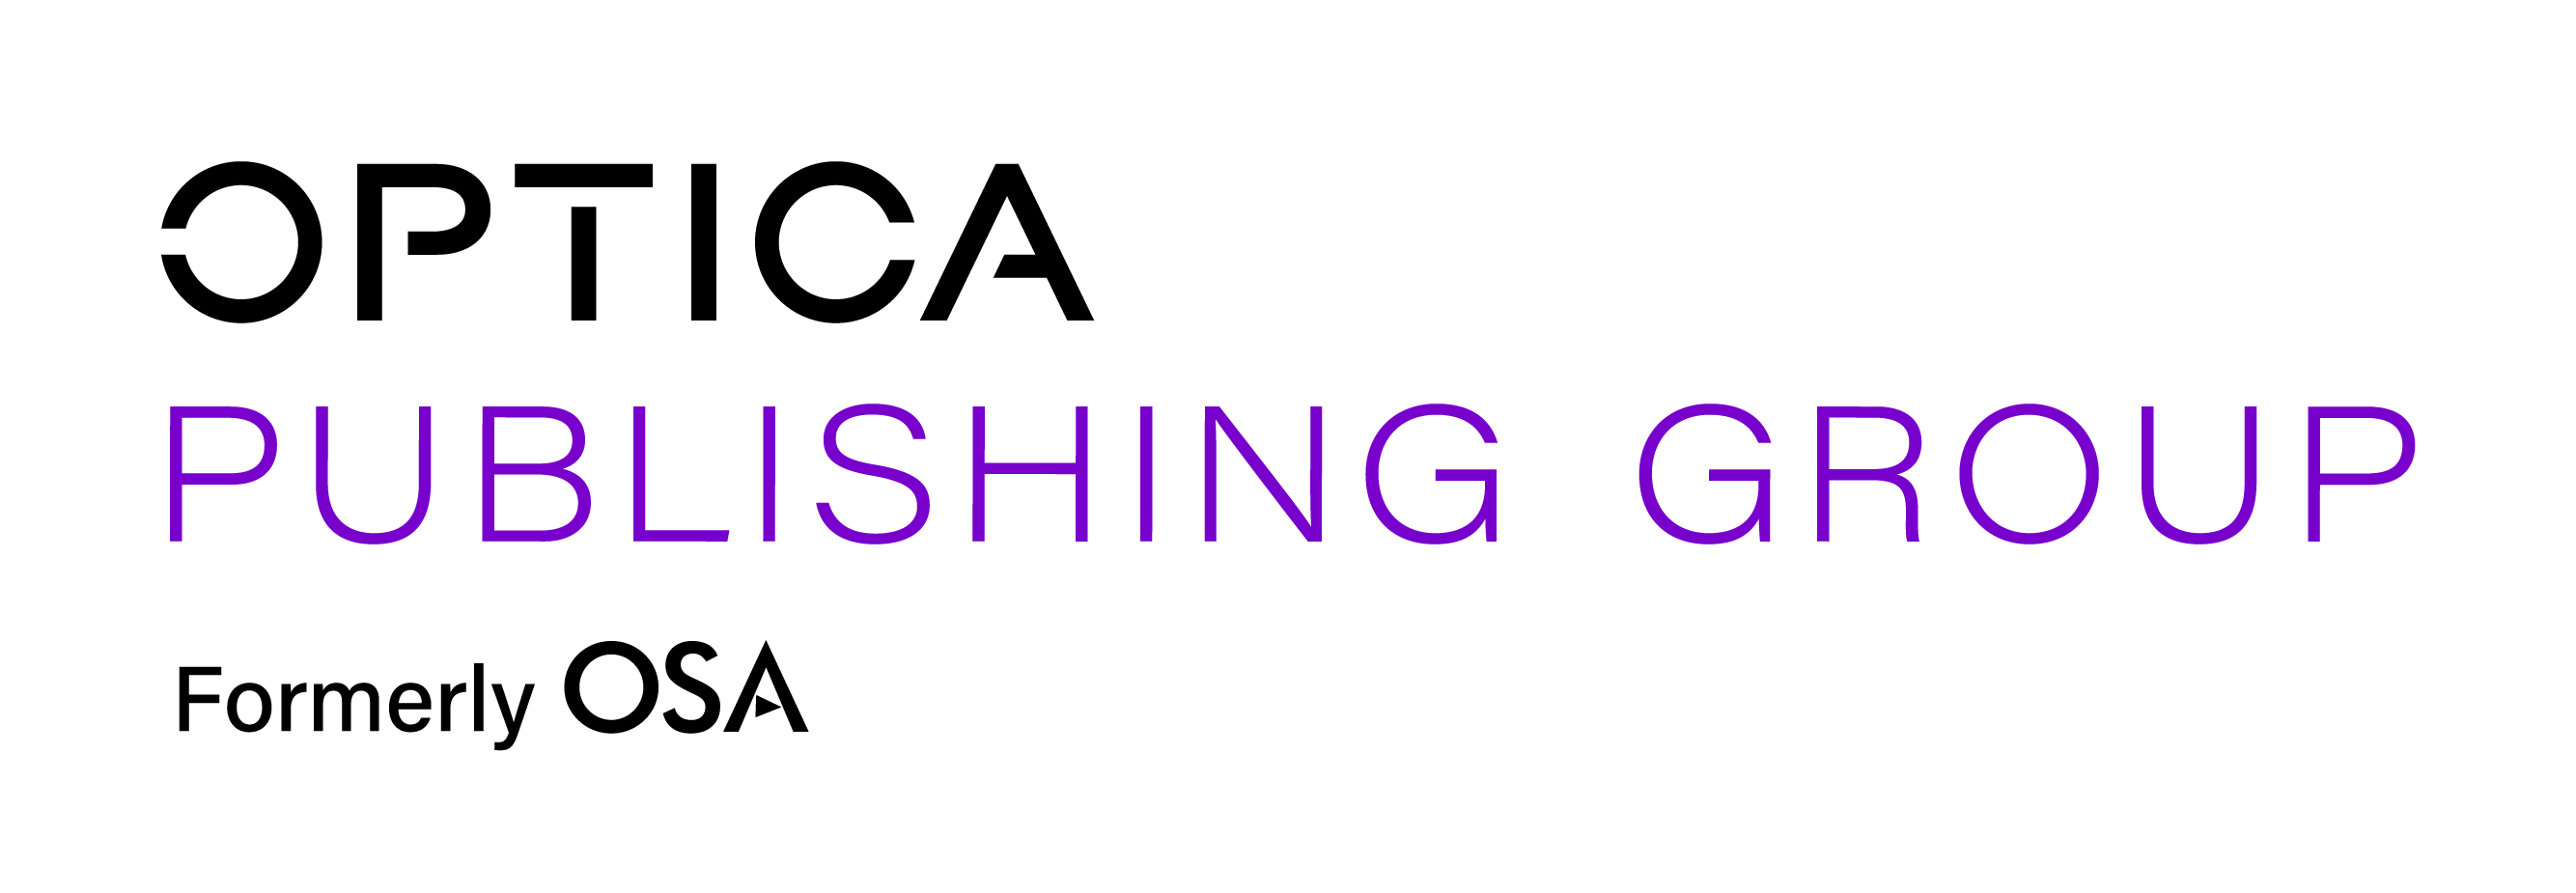 Optica Publishing Group